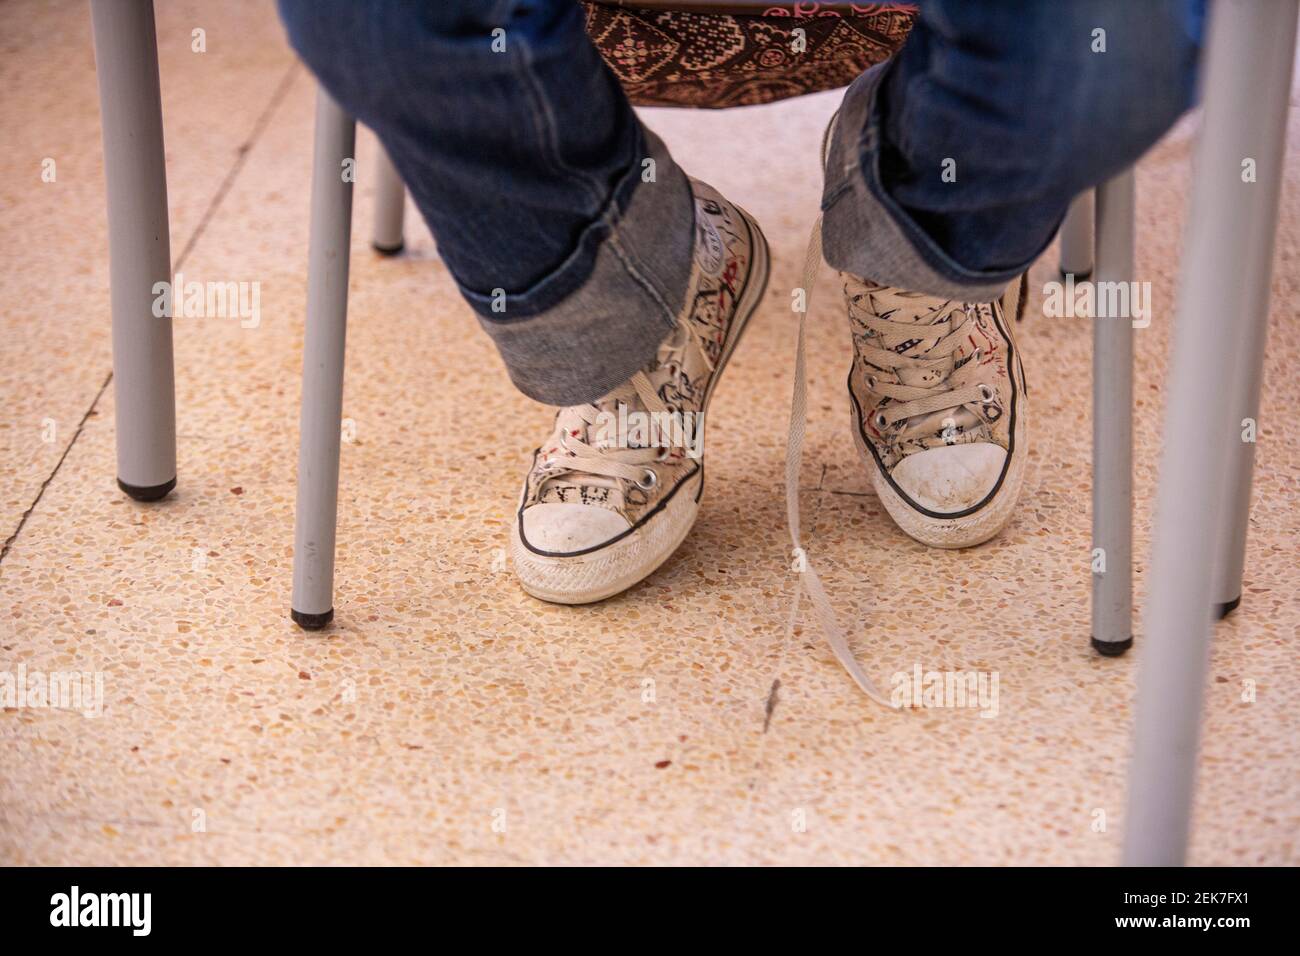 Dettaglio delle scarpe di un bambino in un'aula scolastica Foto Stock